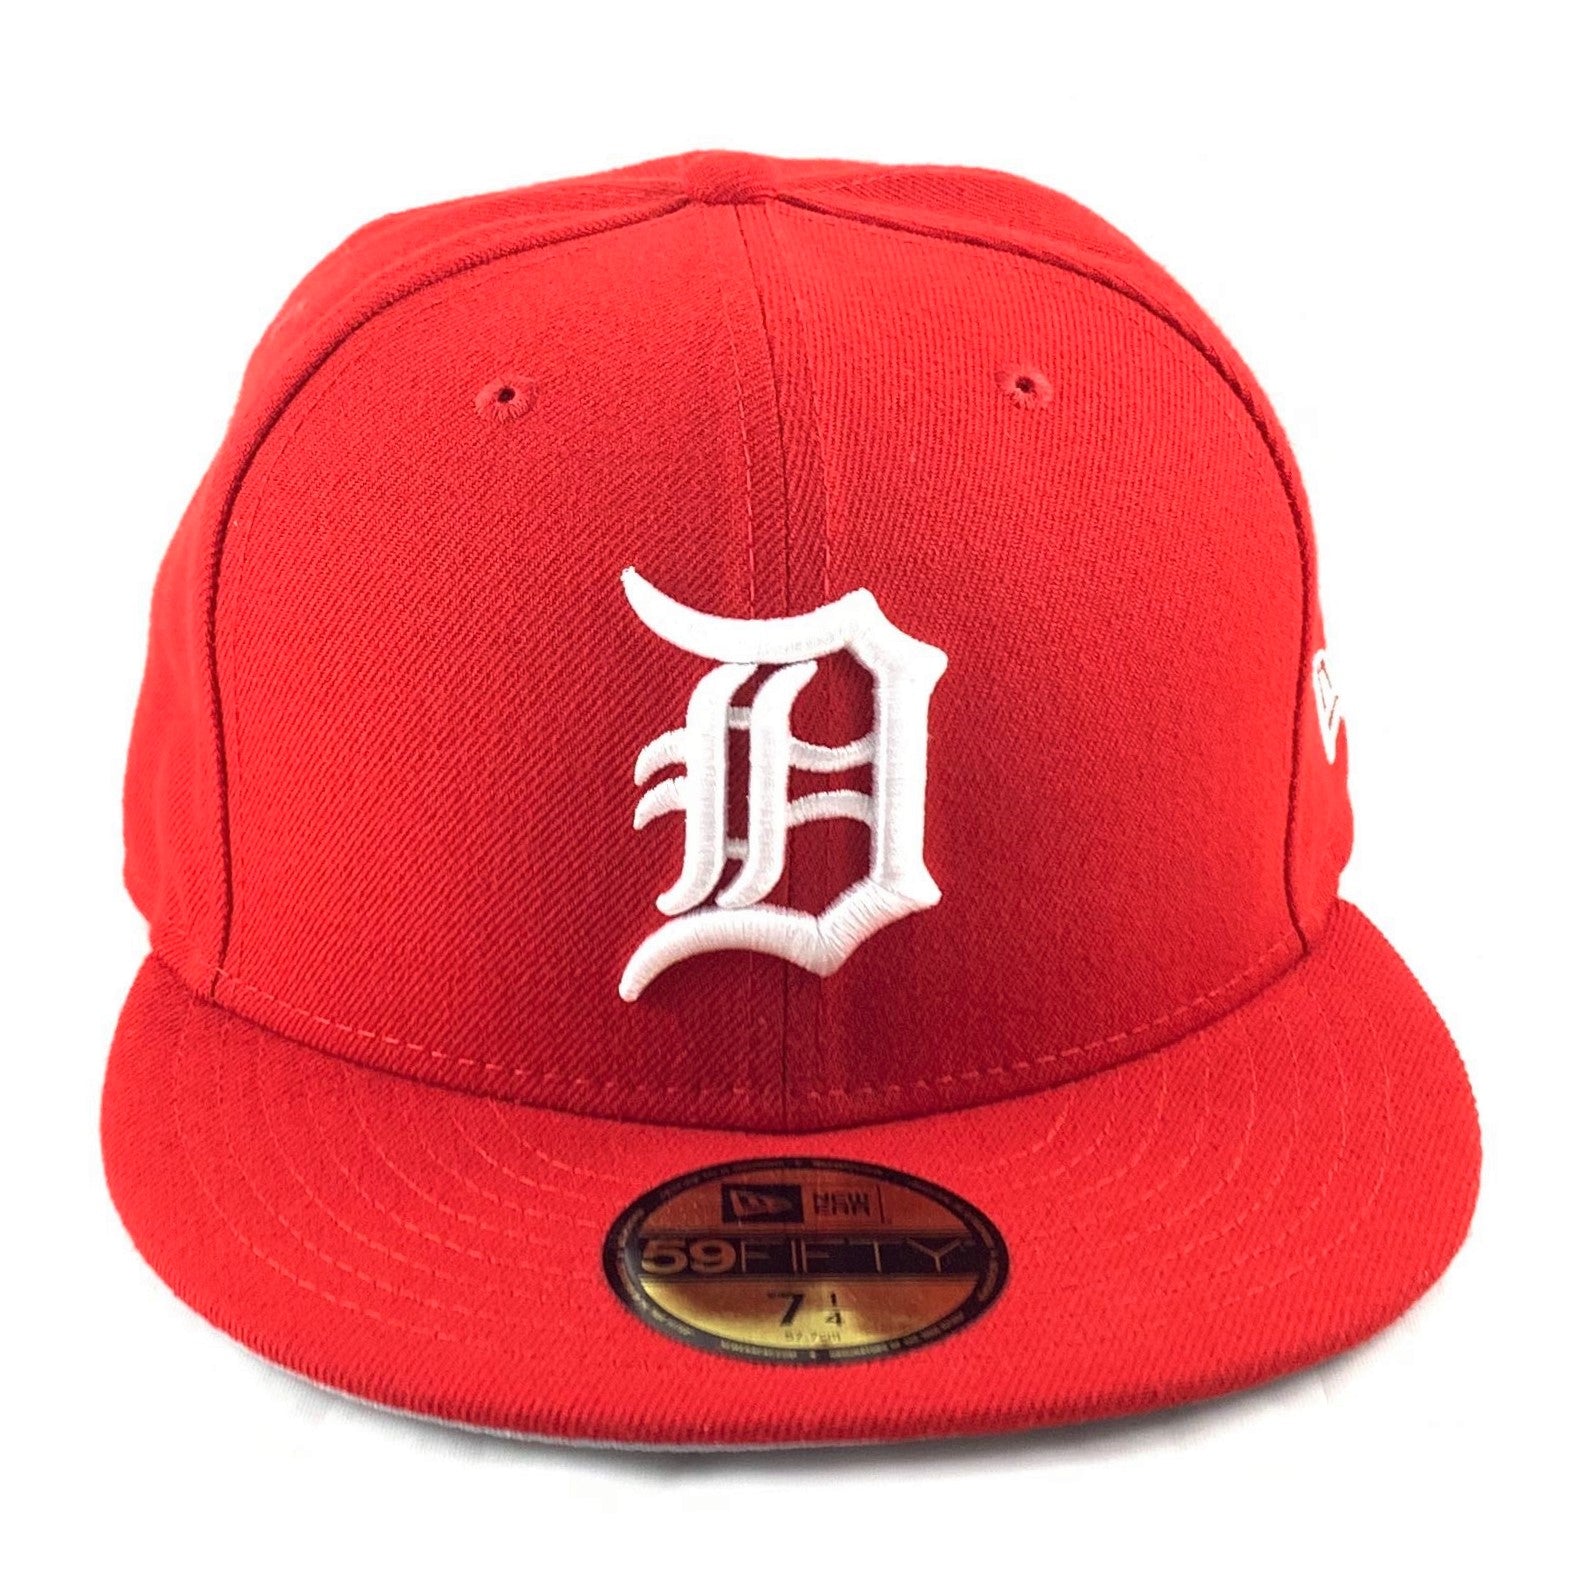 Official Detroit Tigers Hats, Tigers Cap, Tigers Hats, Beanies